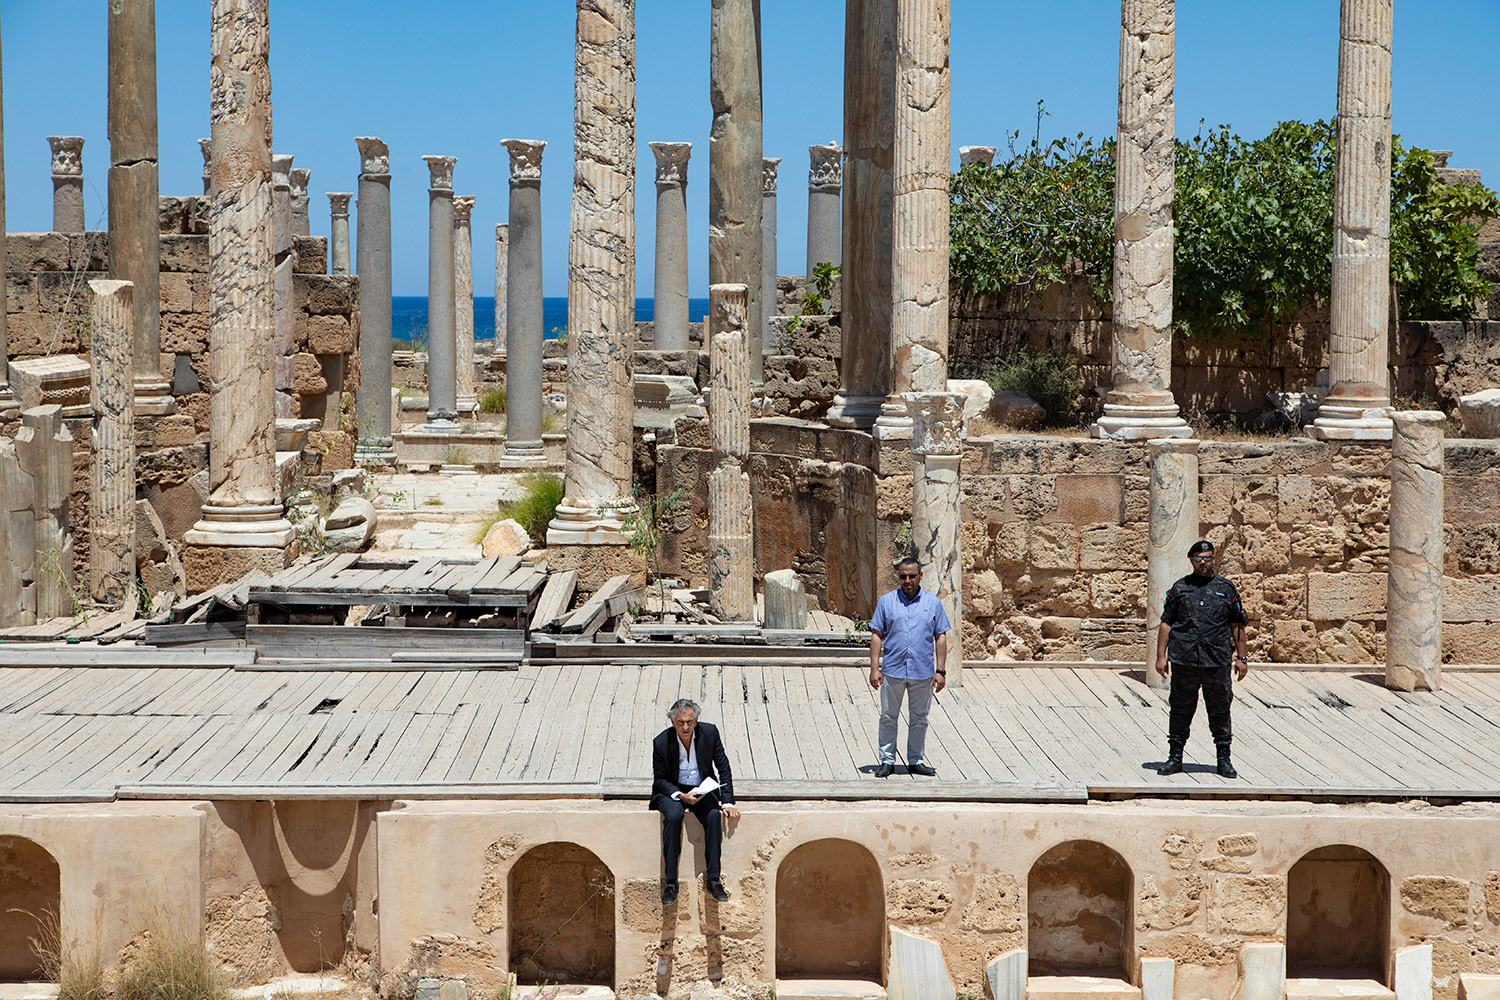 Bernard-Henri Lévy enregistre, dans les ruines de Leptis Magna, son « Appel aux femmes et hommes de bonne volonté » en Libye. Derrière les colonnes de l'amphithéâtre, au fond de la scène à ciel ouvert, on voit la mer.